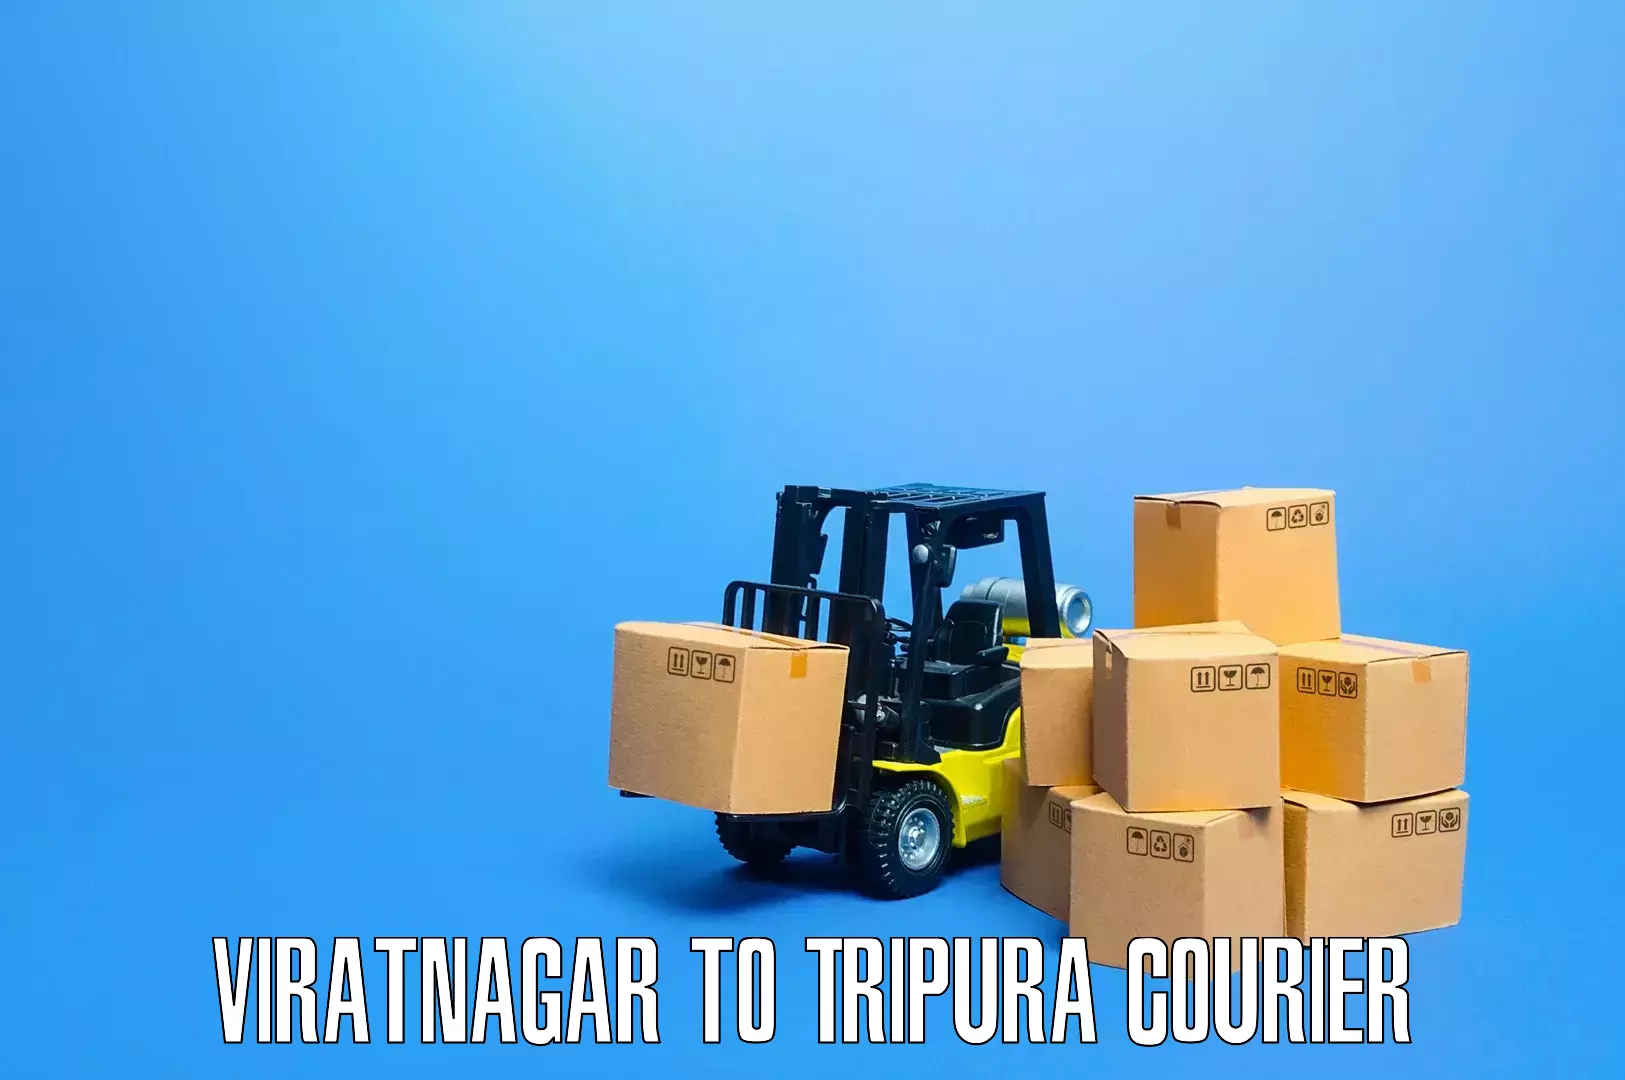 Furniture moving experts Viratnagar to Manughat